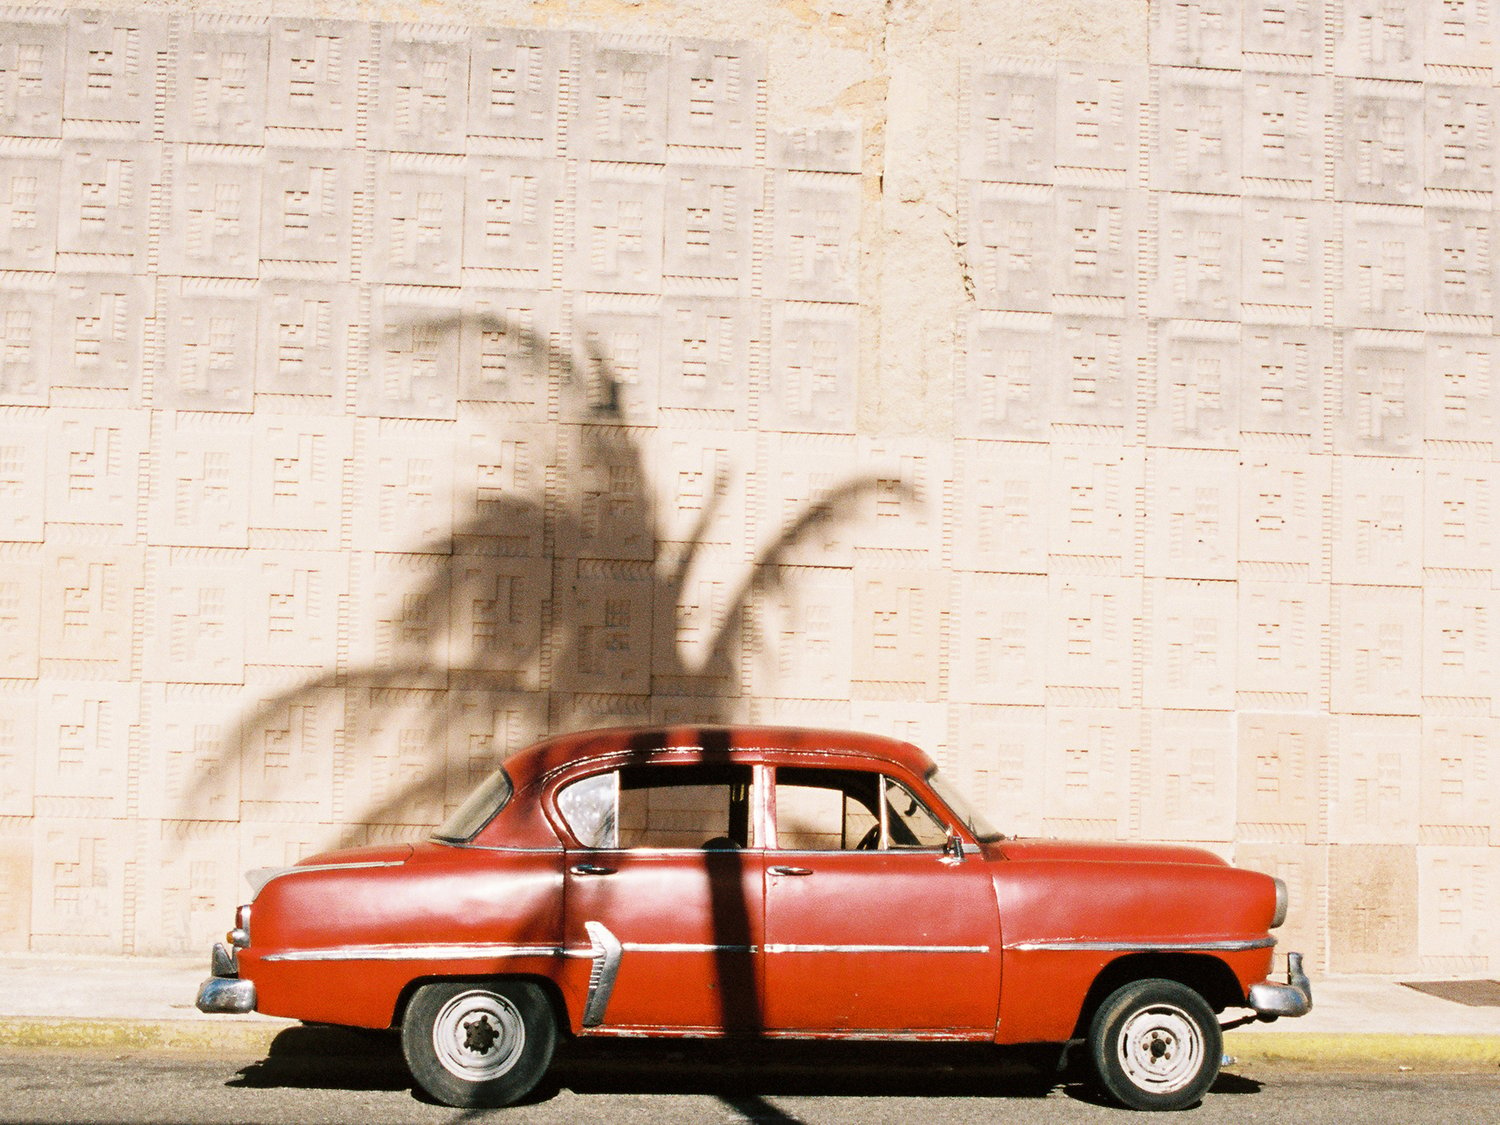 Image of Havana